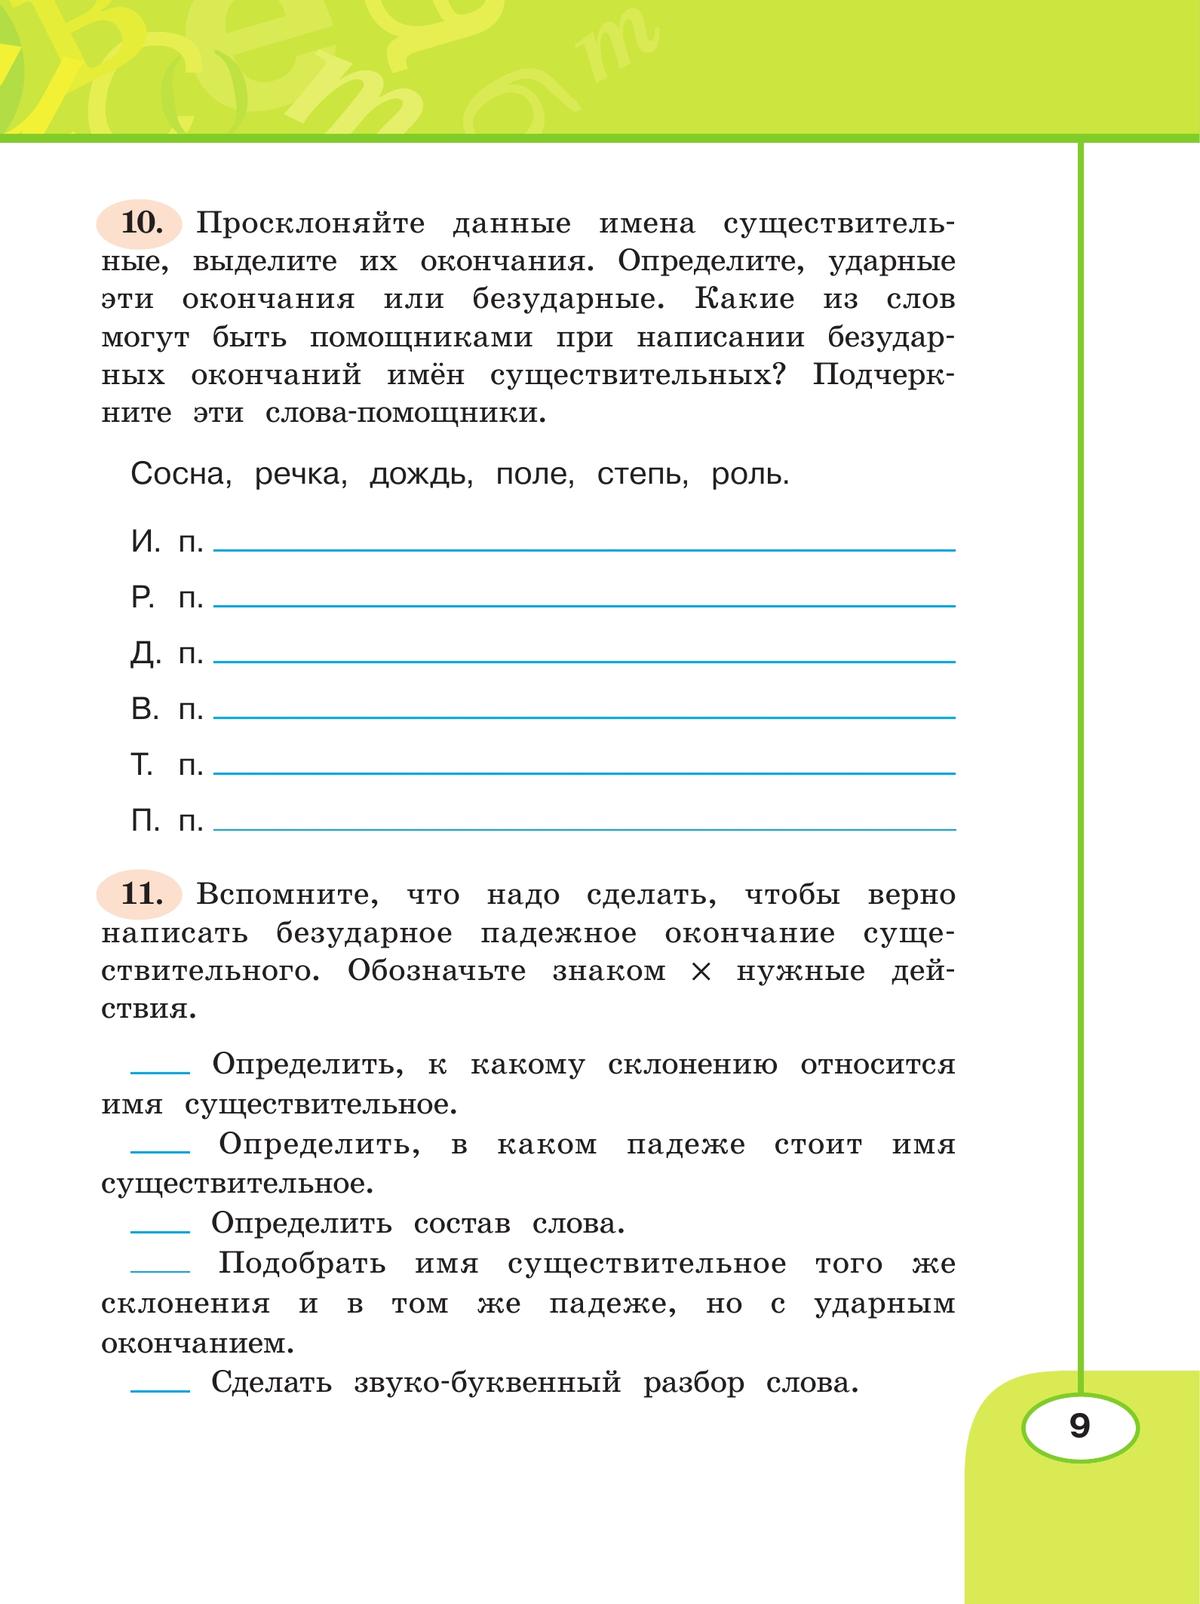 Русский язык. Рабочая тетрадь. 4 класс. В 2 частях. Часть 2 5